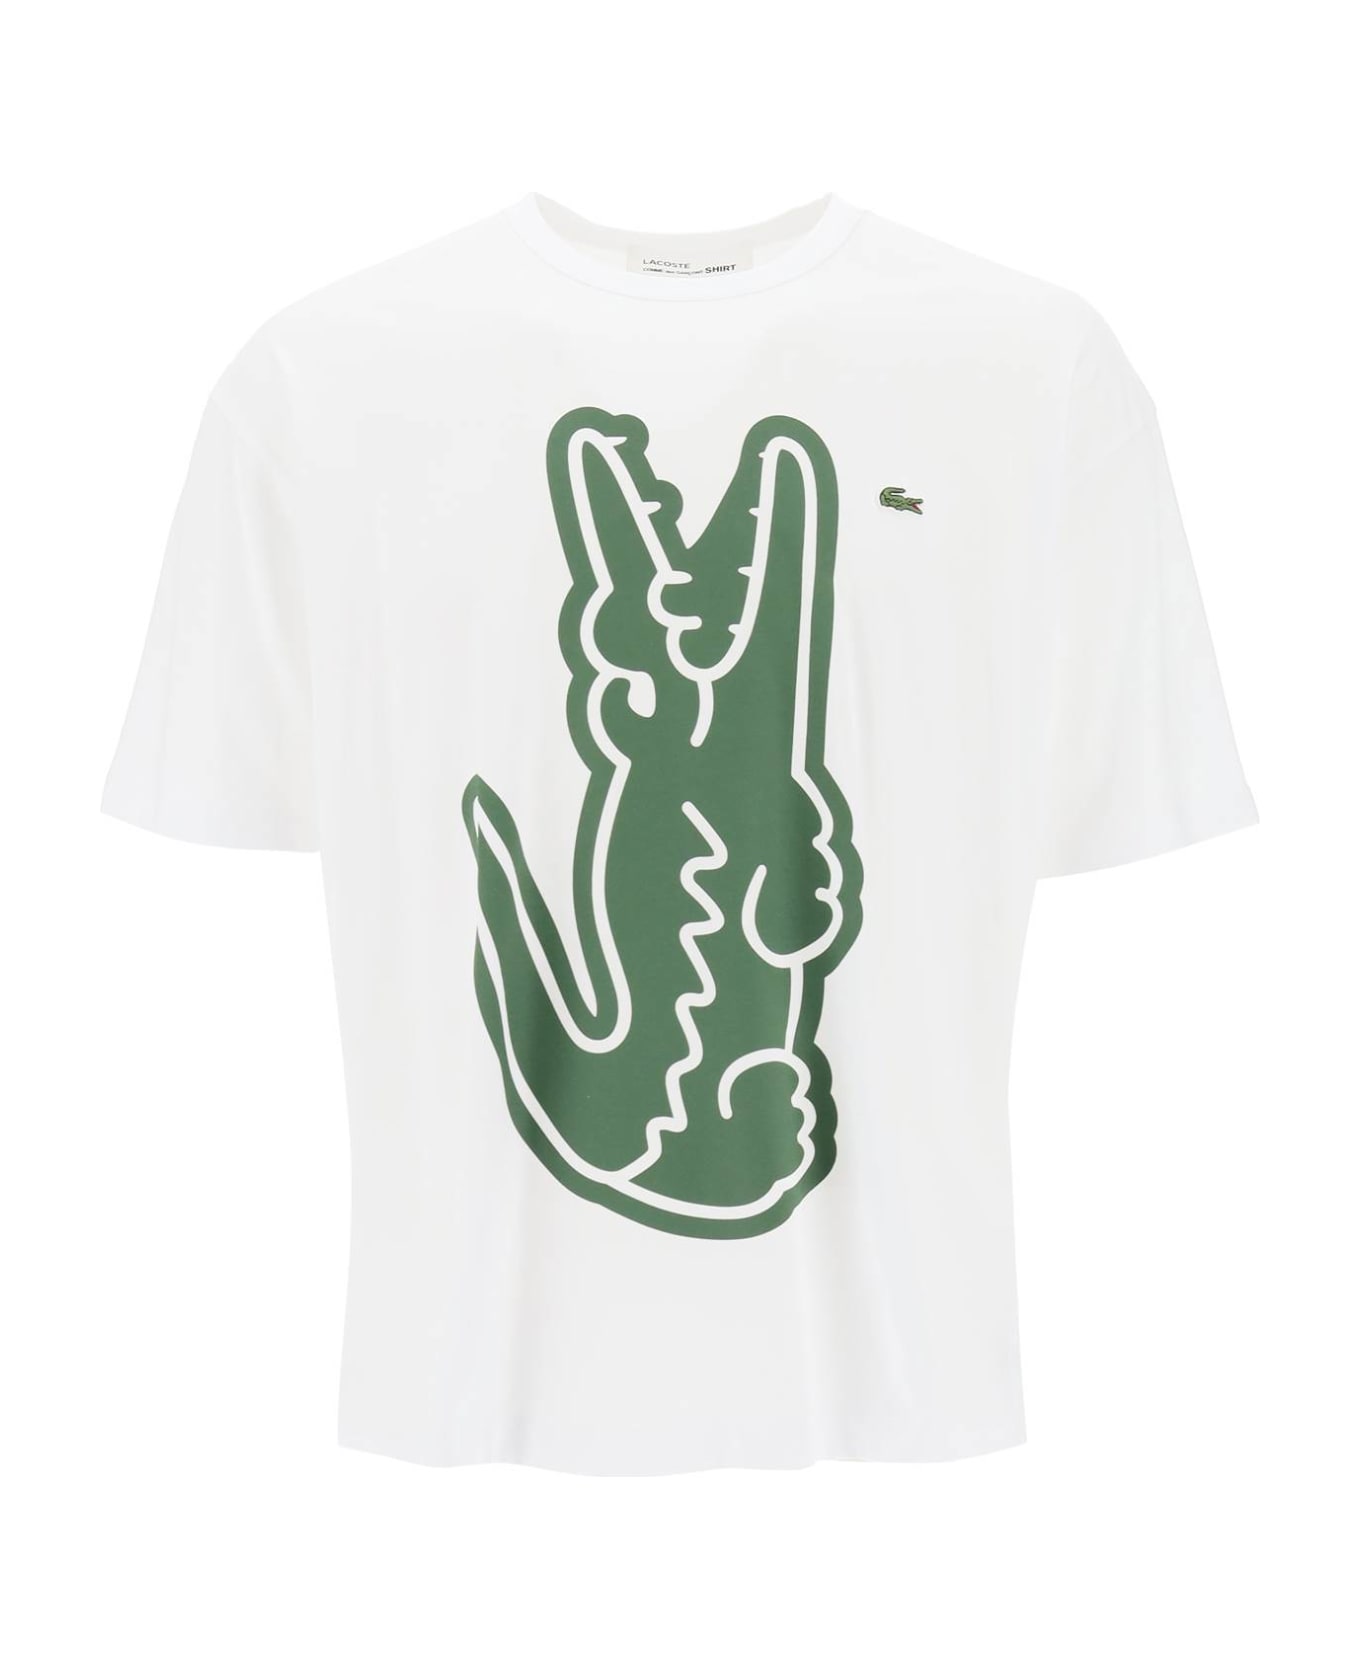 Comme des Garçons Shirt Boy X Lacoste Crocodile Print T-shirt - White